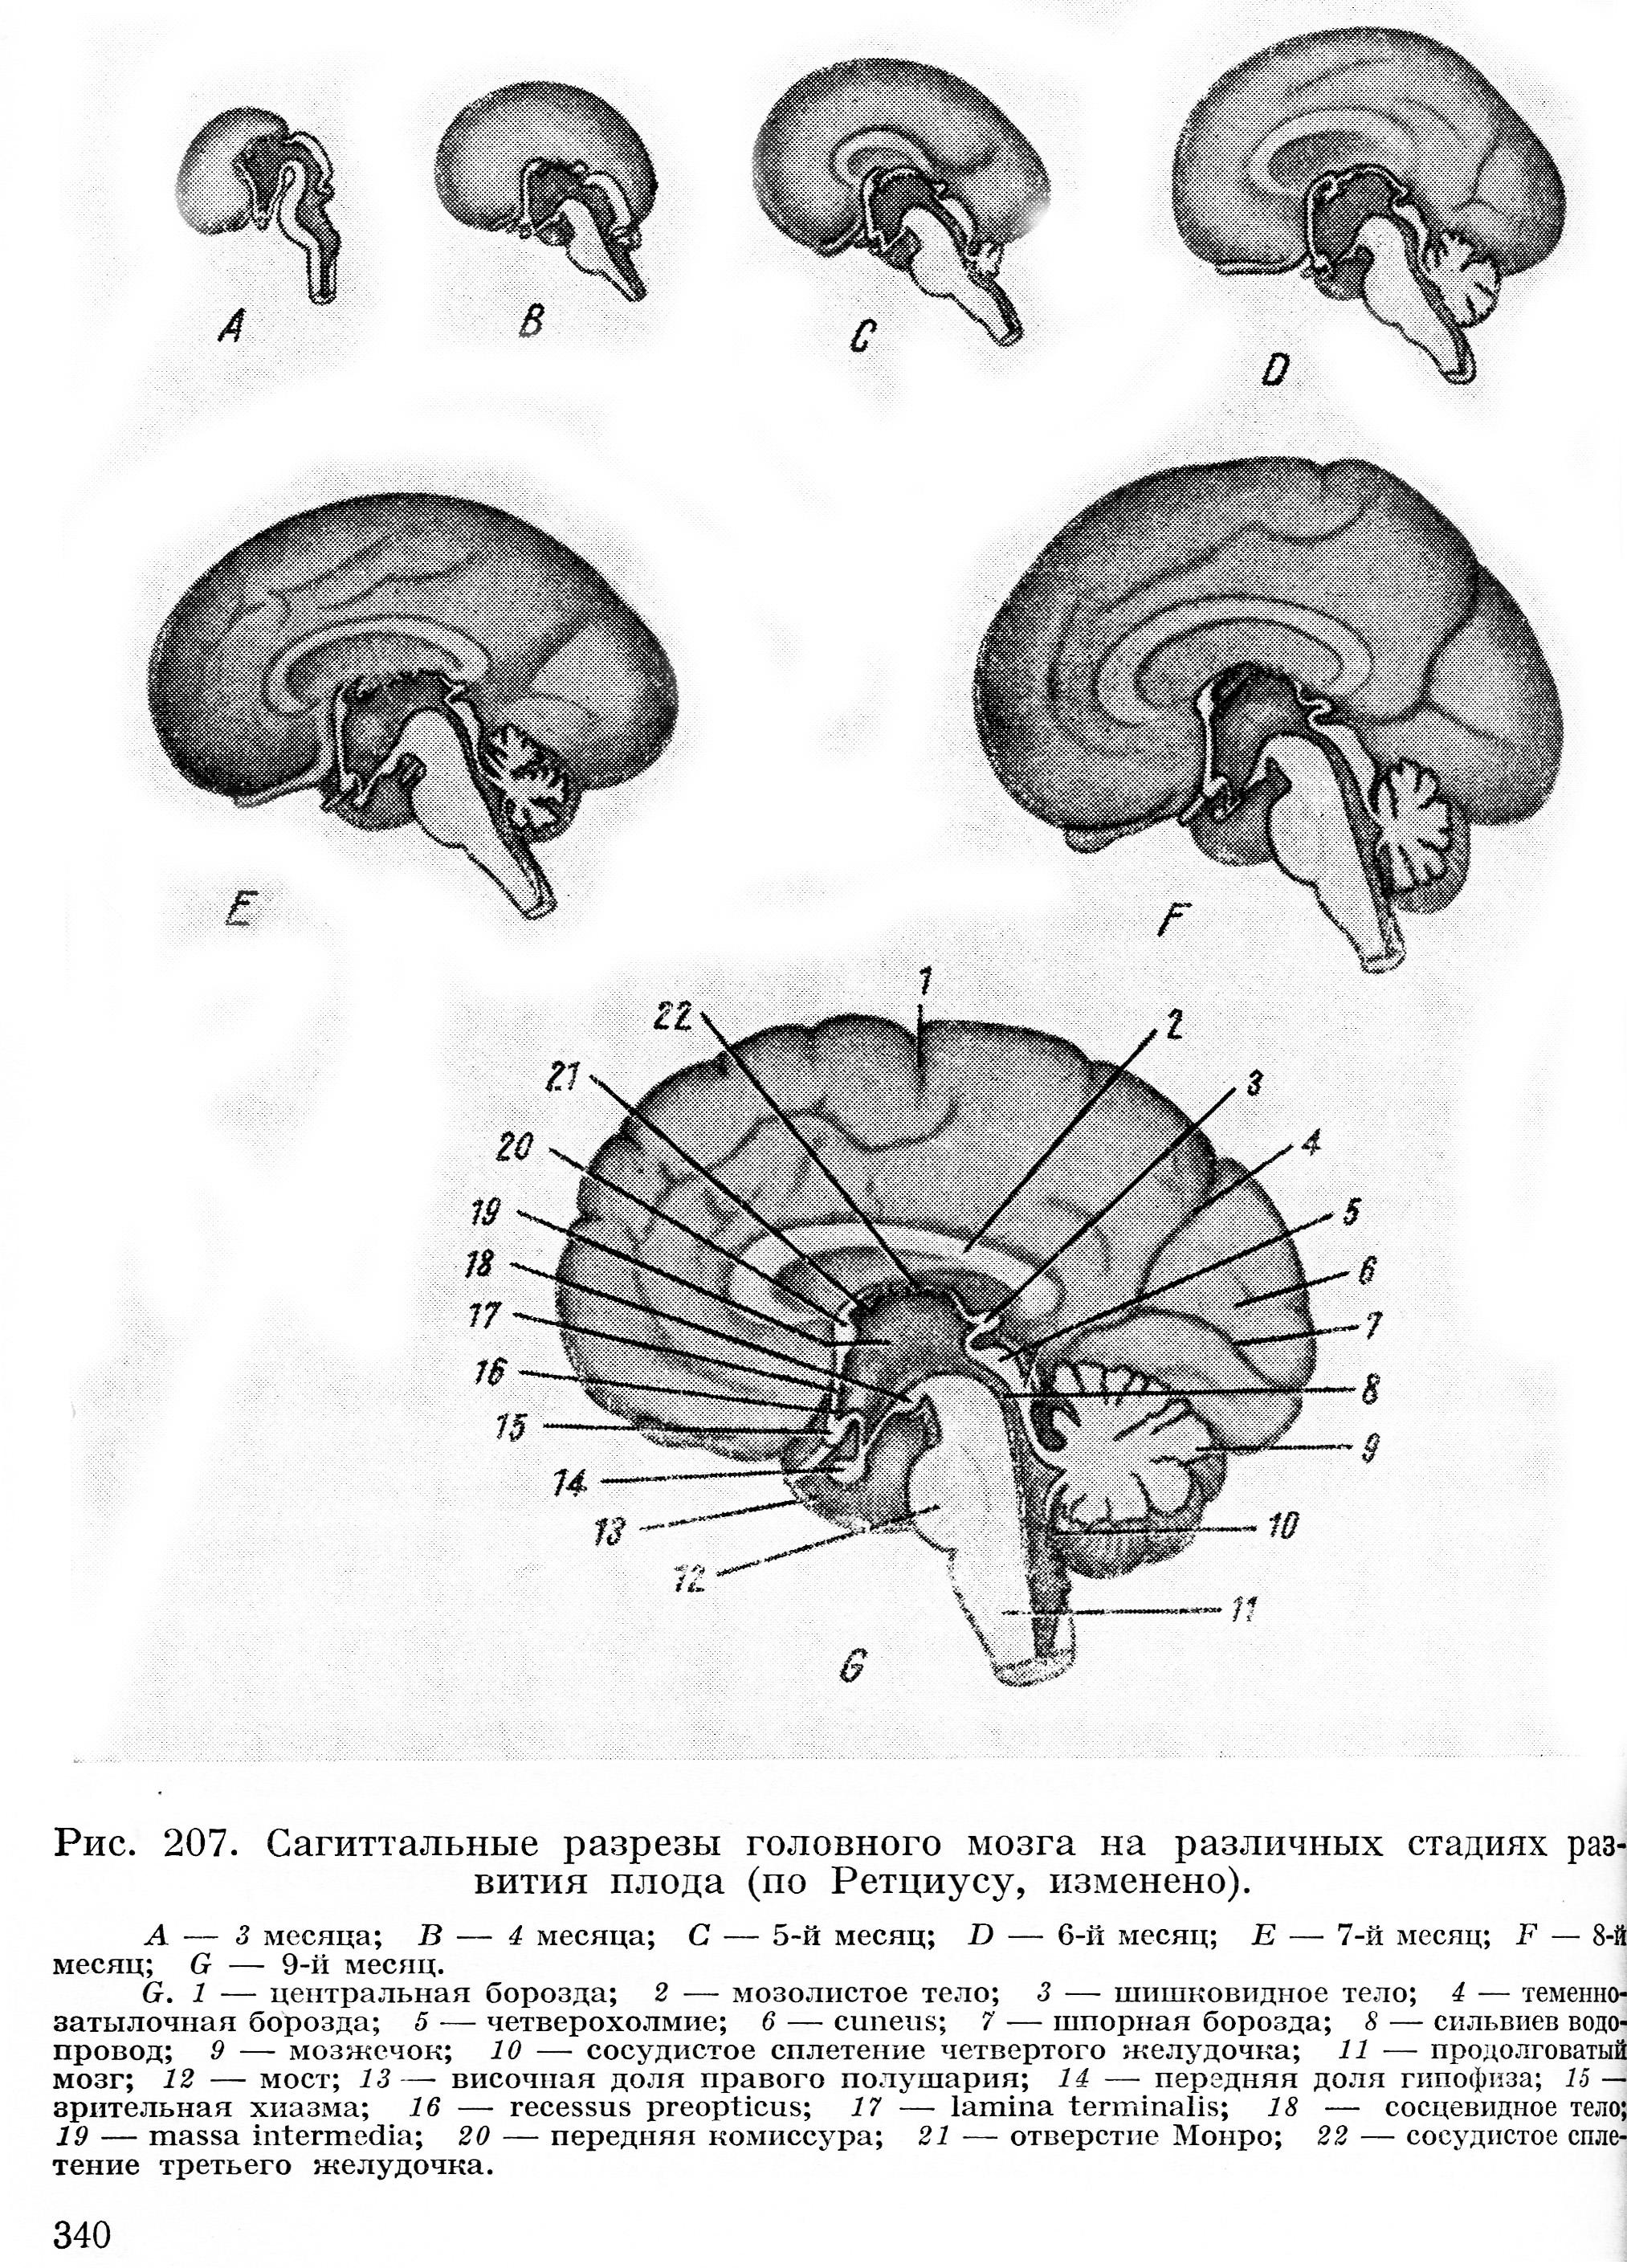 Эмбриогенез мозга человека. Шишковидная железа мозг в разрезе. Сагиттальный разрез головного мозга анатомия. Схему развития головного мозга человека. Изобразите схему развития головного мозга человека.